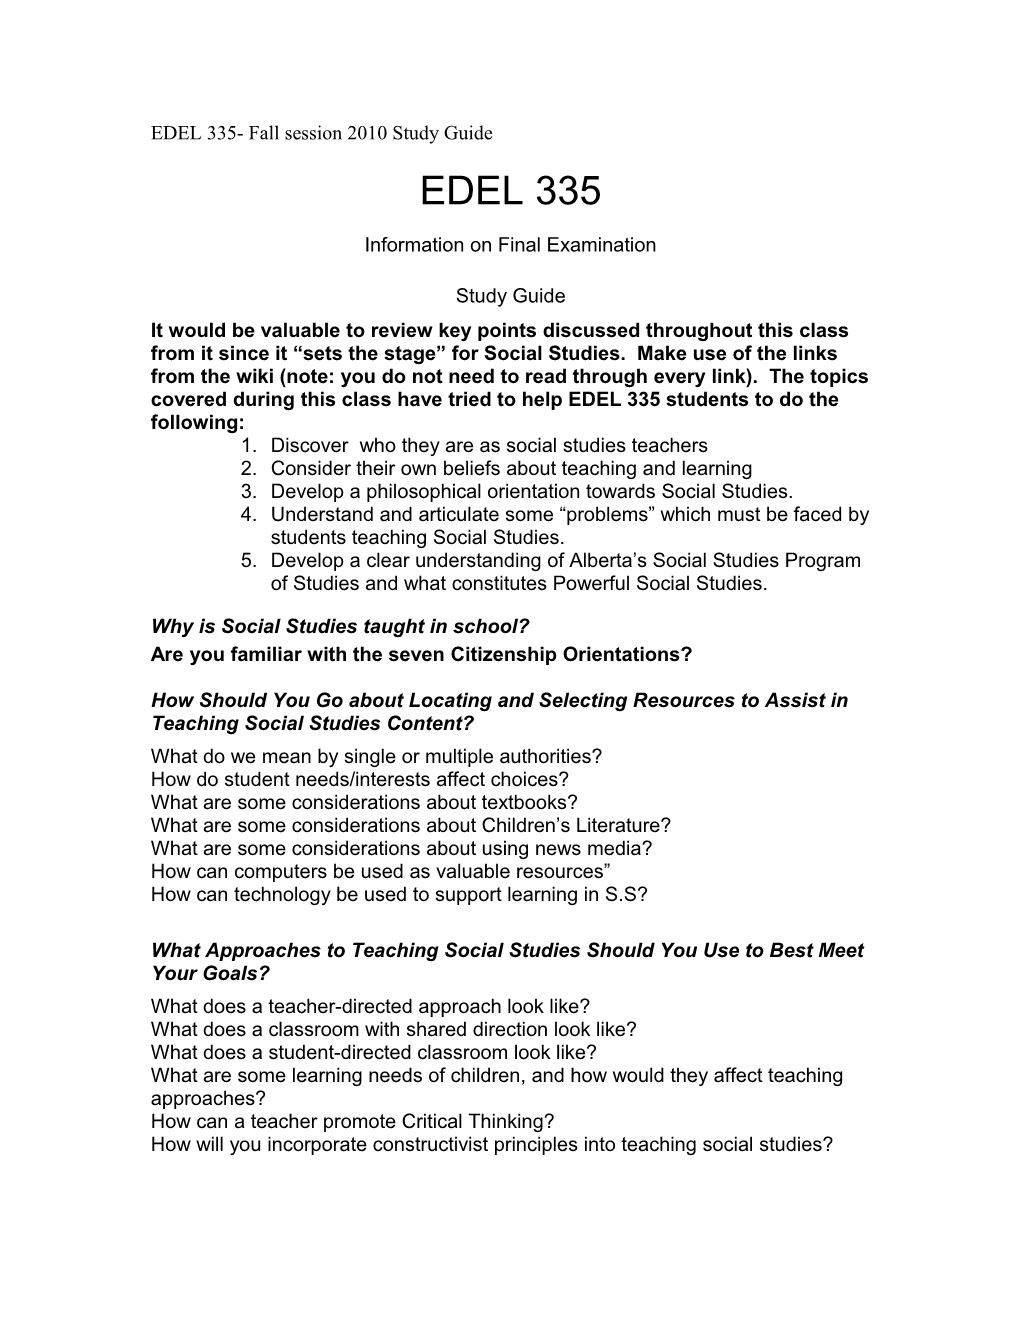 EDEL 335 Study Guide